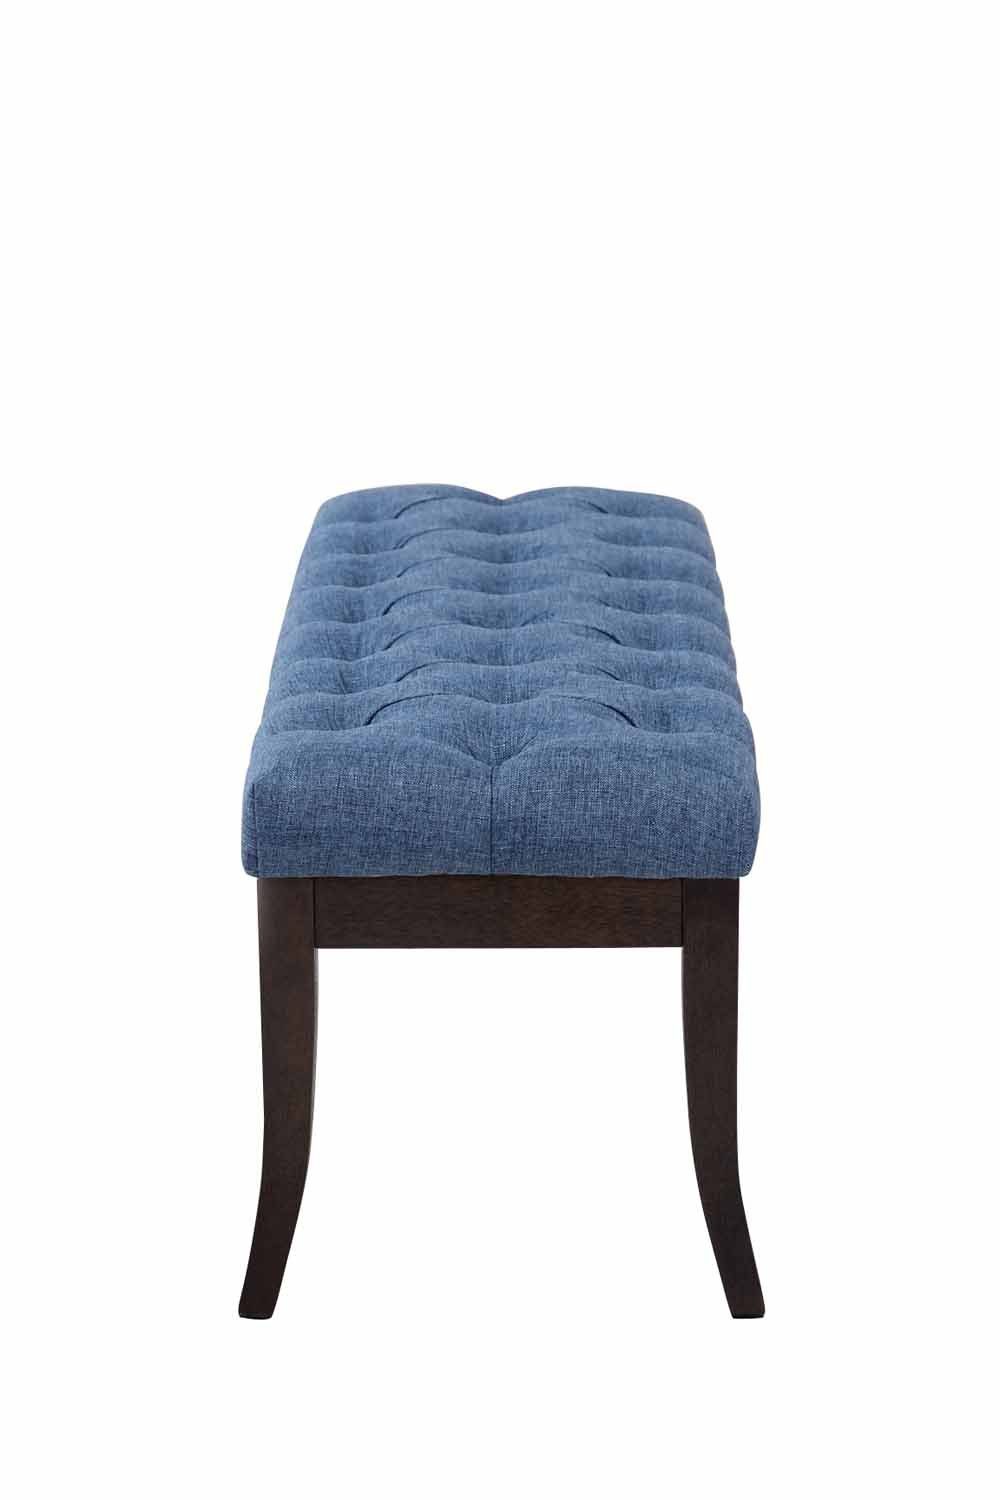 Sitzbank hochwertiger antik-dunkel, Stoff Ramses mit Polsterung CLP blau